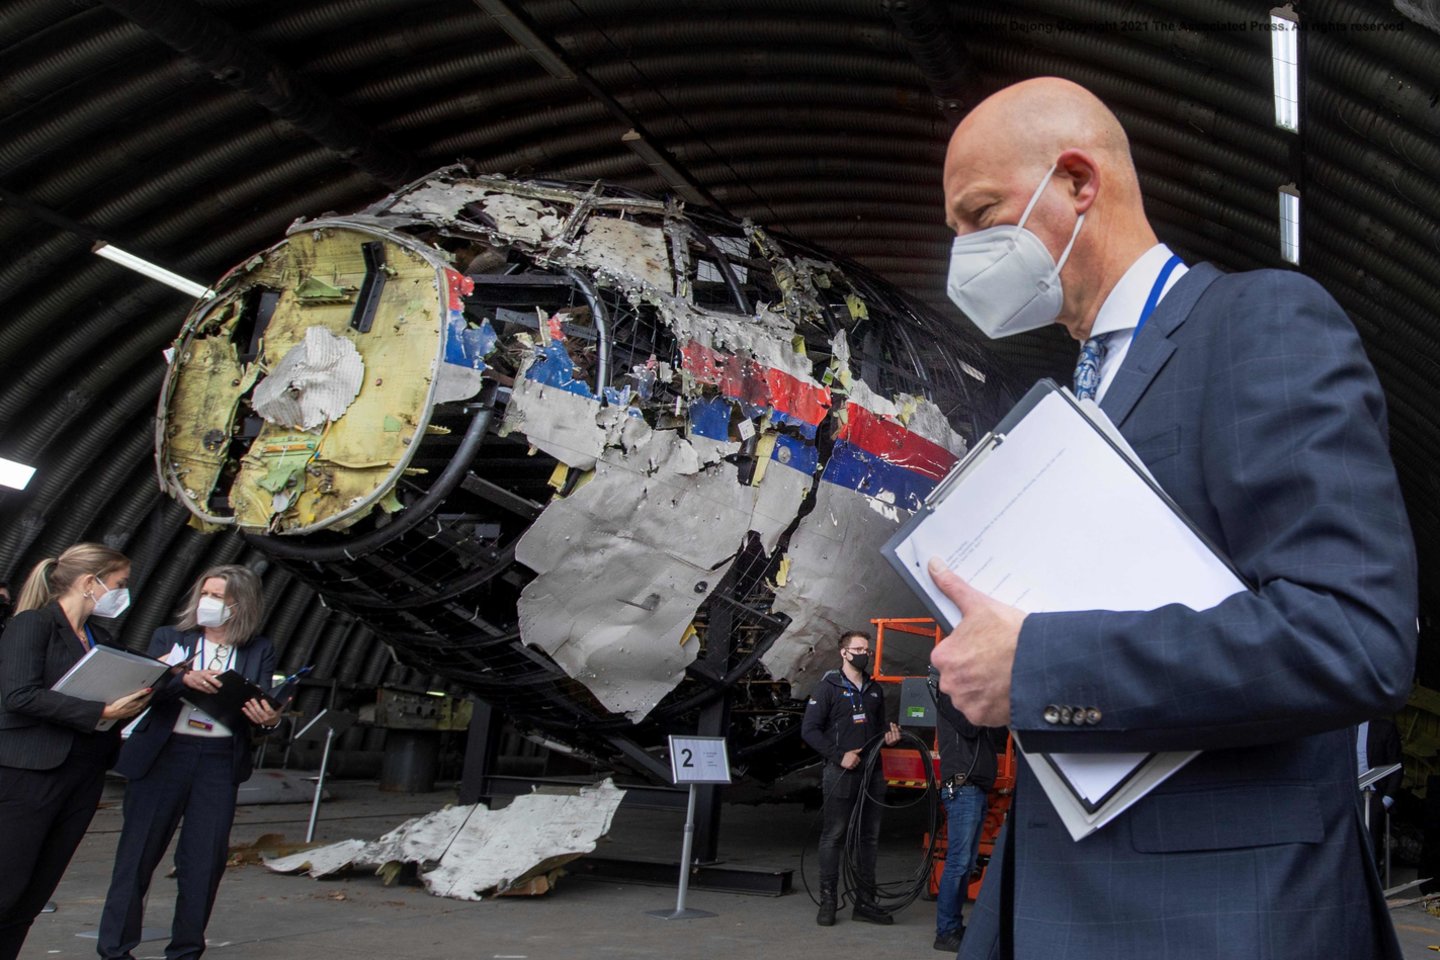  Šioje 2021 m. gegužės 26 d. darytoje nuotraukoje pirmininkaujantis teisėjas Hendrikas Steenhuisas ir kiti proceso teisėjai ir advokatai apžiūri rekonstruotas oro bendrovės "Malaysia Airlines" reiso MH17 lėktuvo nuolaužas Gilzės-Rijeno karinėje aviacijos bazėje.<br> AFP / Scanpix nuotr.